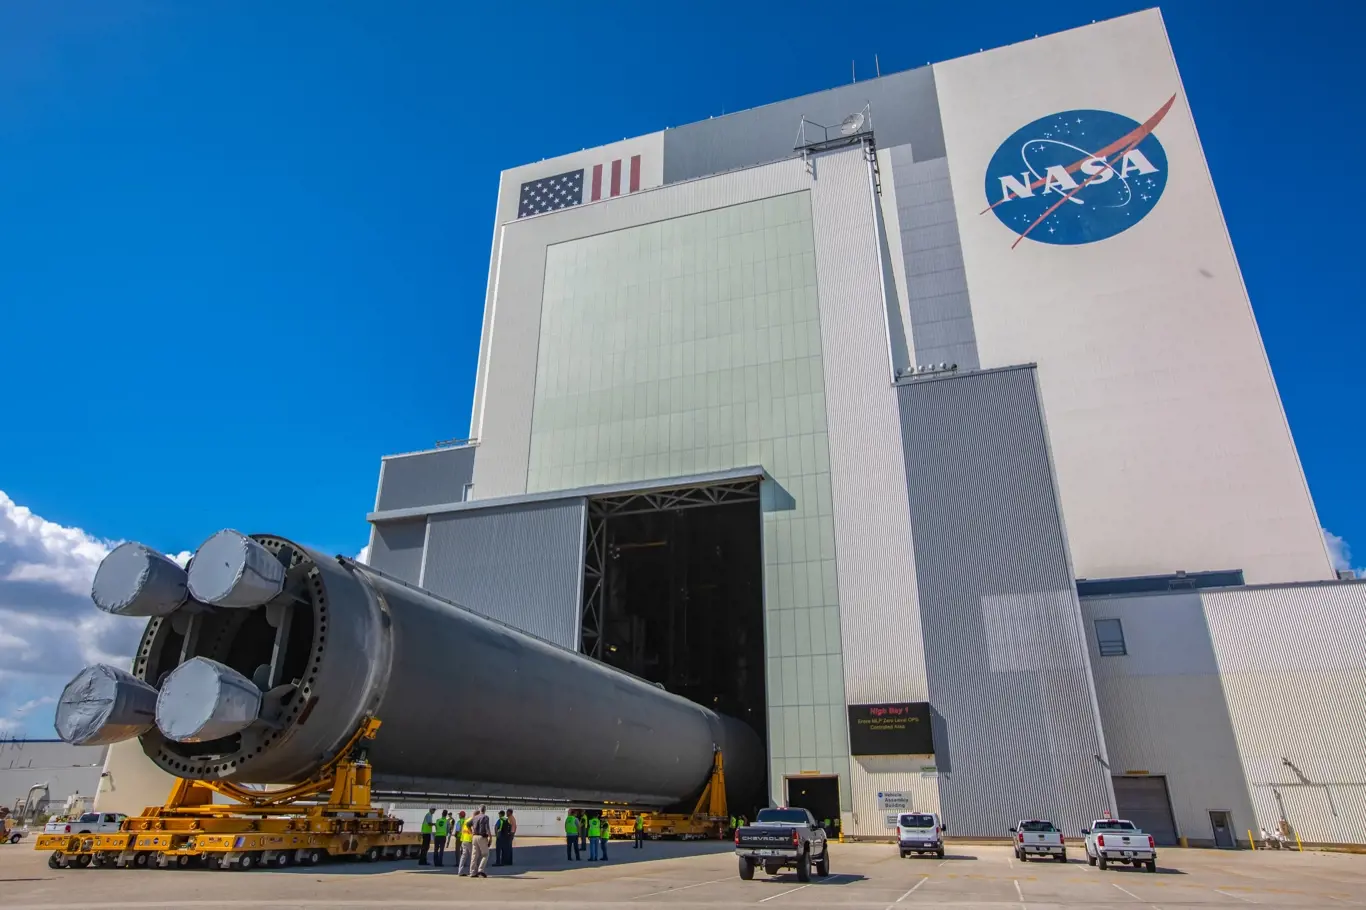 Florida, Spojené státy americké, říjen 2019: Dlouhý základní stupeň rakety SLS (Space Launch System) Pathfinder je přemístěn do budovy pro sestavení vozidla v Kennedyho vesmírném středisku NASA. Foto se svolením NASA